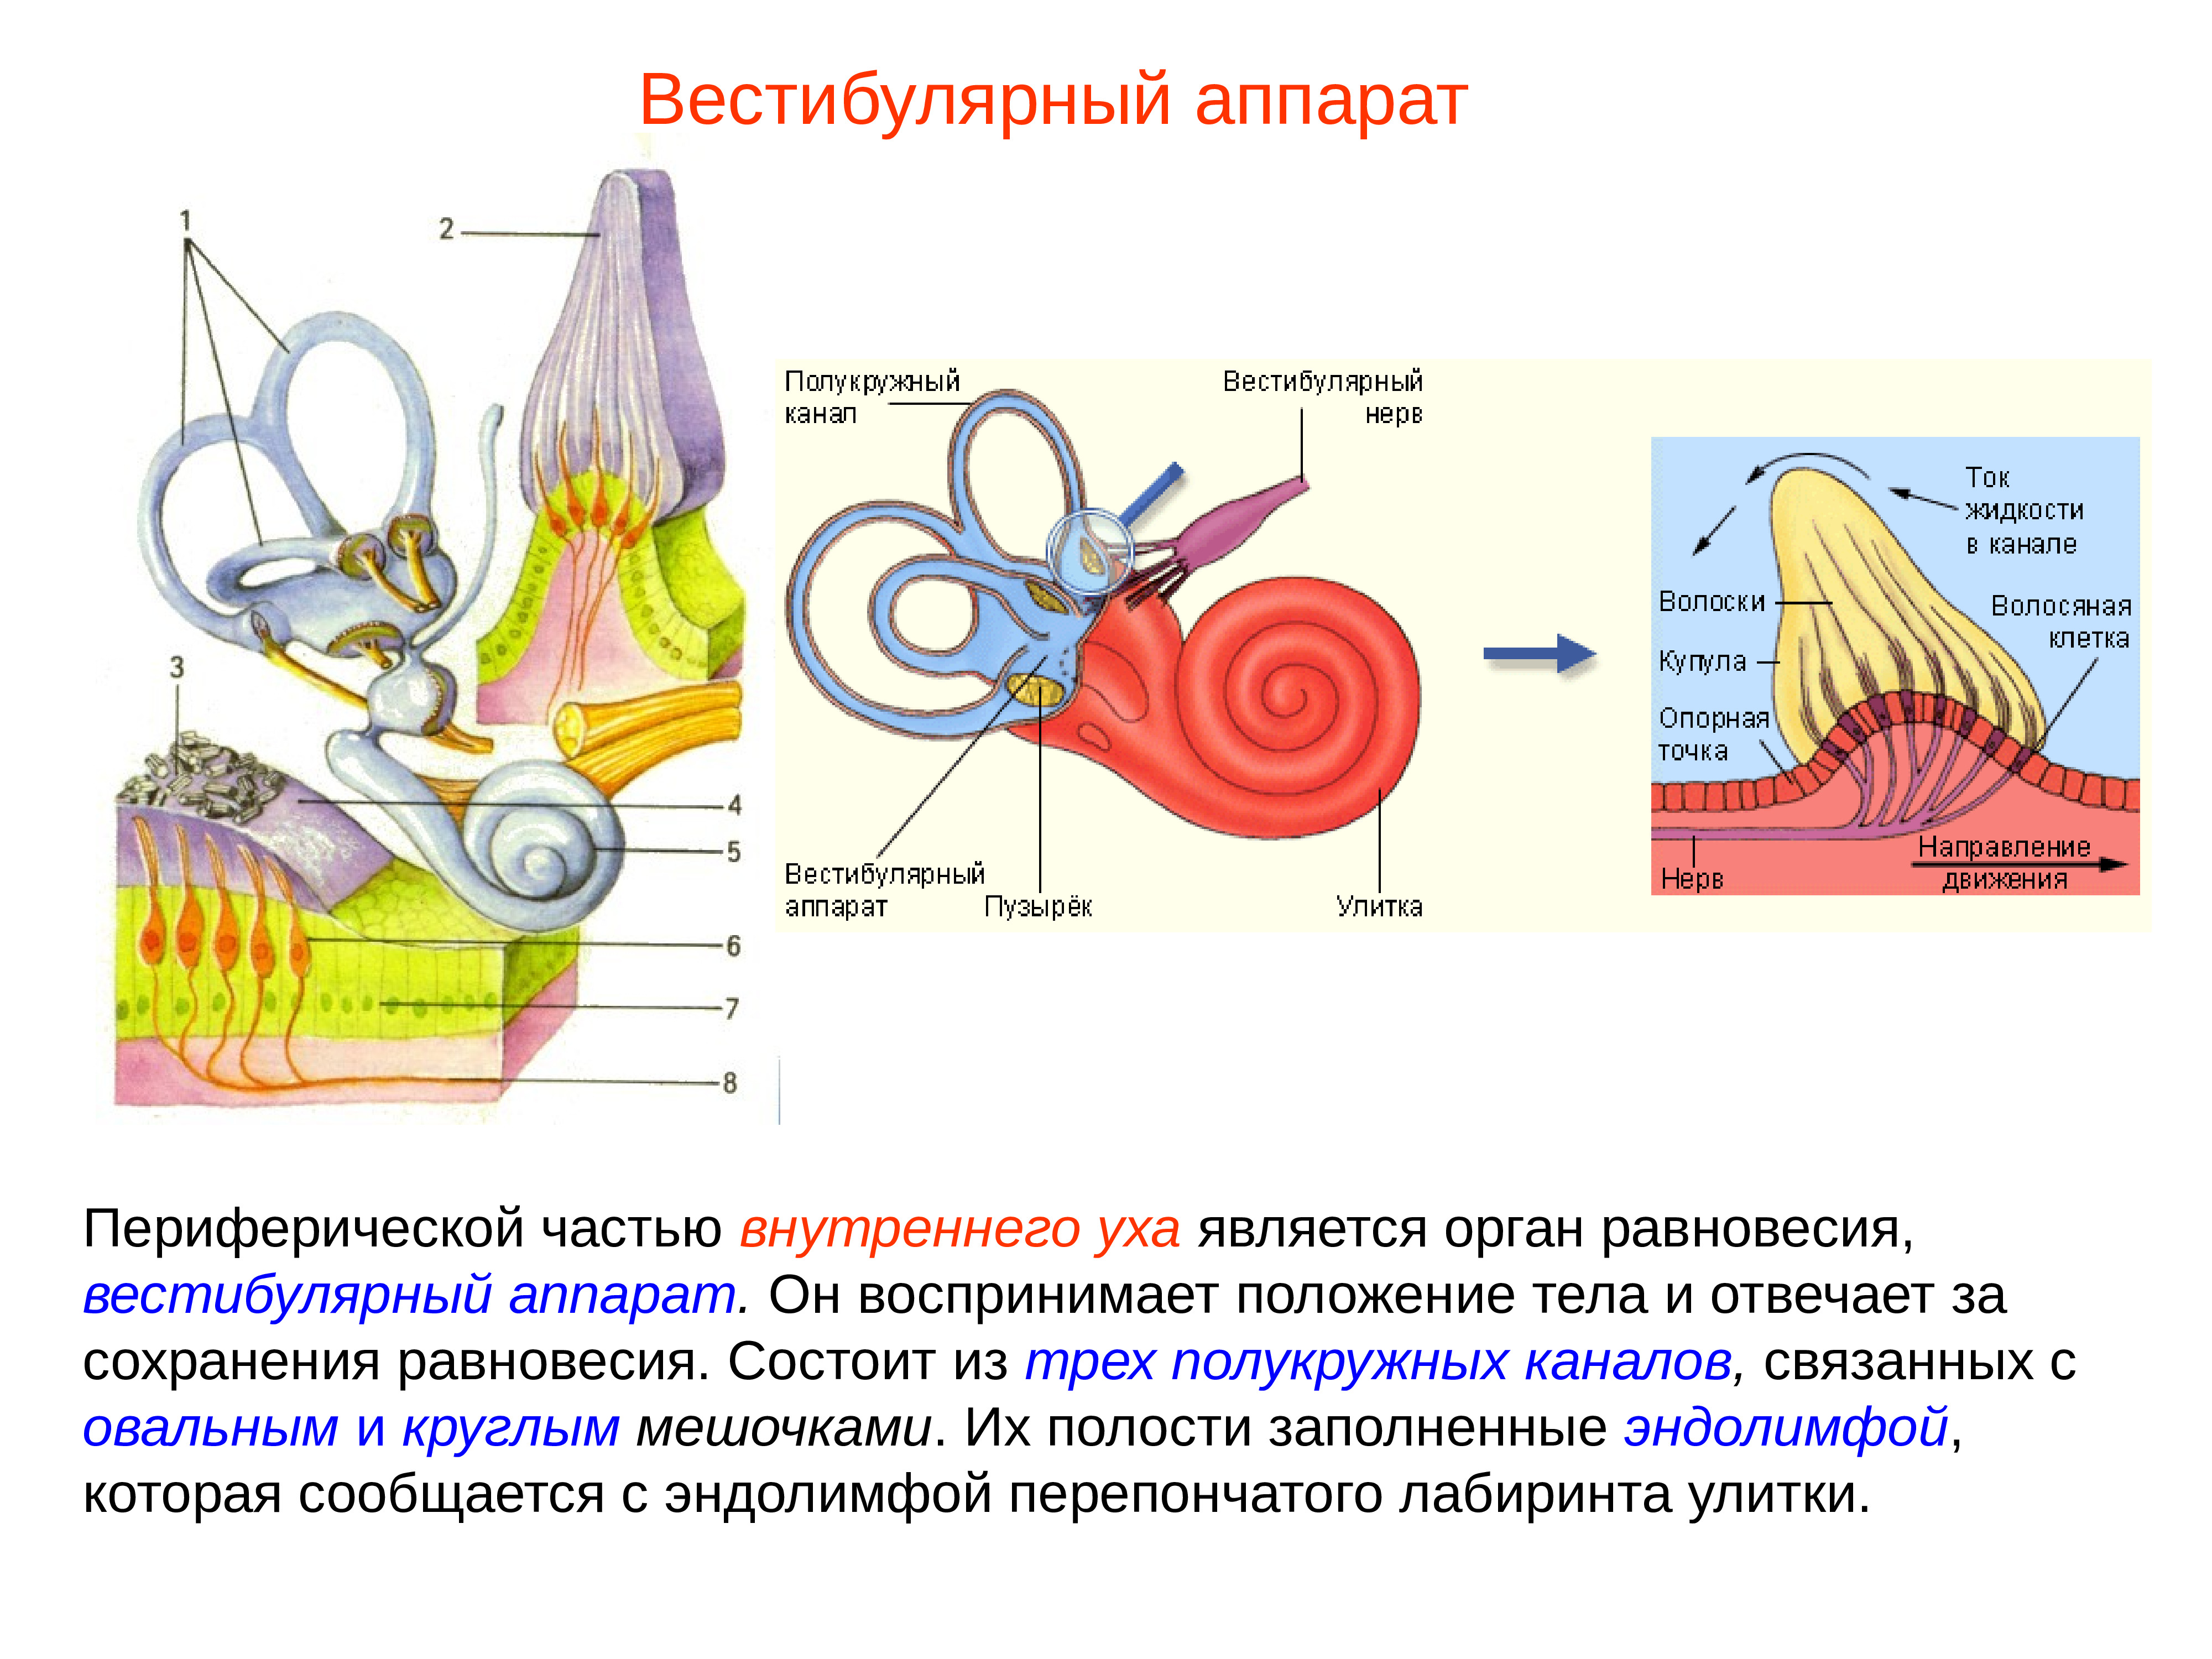 Чувствительные клетки внутреннего уха. Внутреннее ухо вестибулярный анализатор анатомия. Строение строение вестибулярного аппарата. Полукружные каналы внутреннего уха анатомия. Схема периферического отдела вестибулярного анализатора.